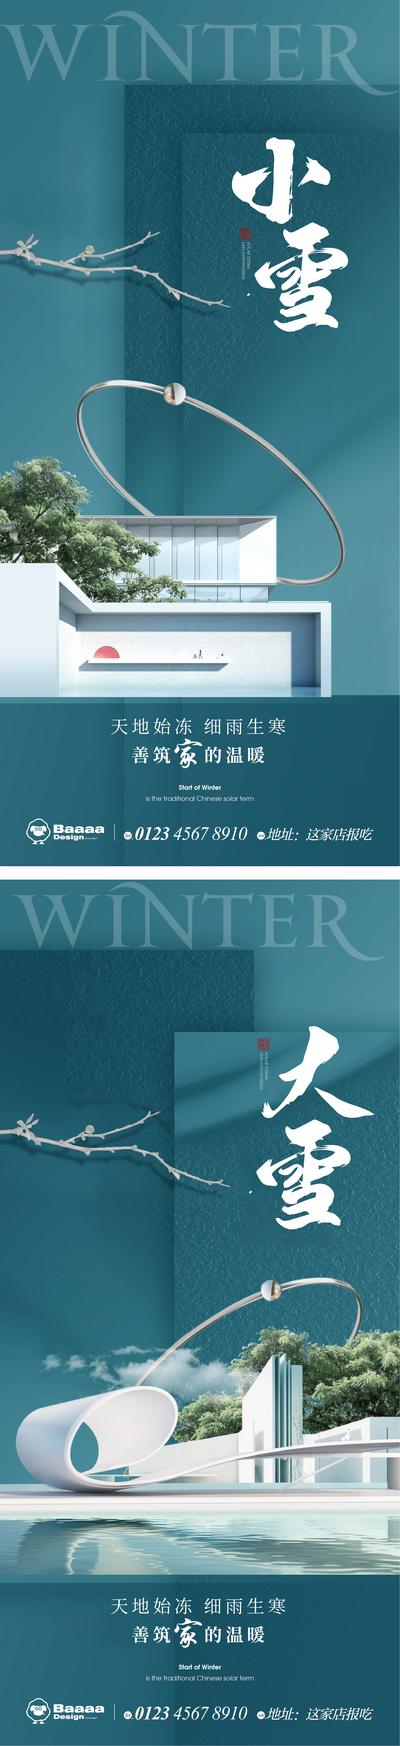 【南门网】广告 海报 节气 小雪 大雪 雪景 雪花 排版 精致